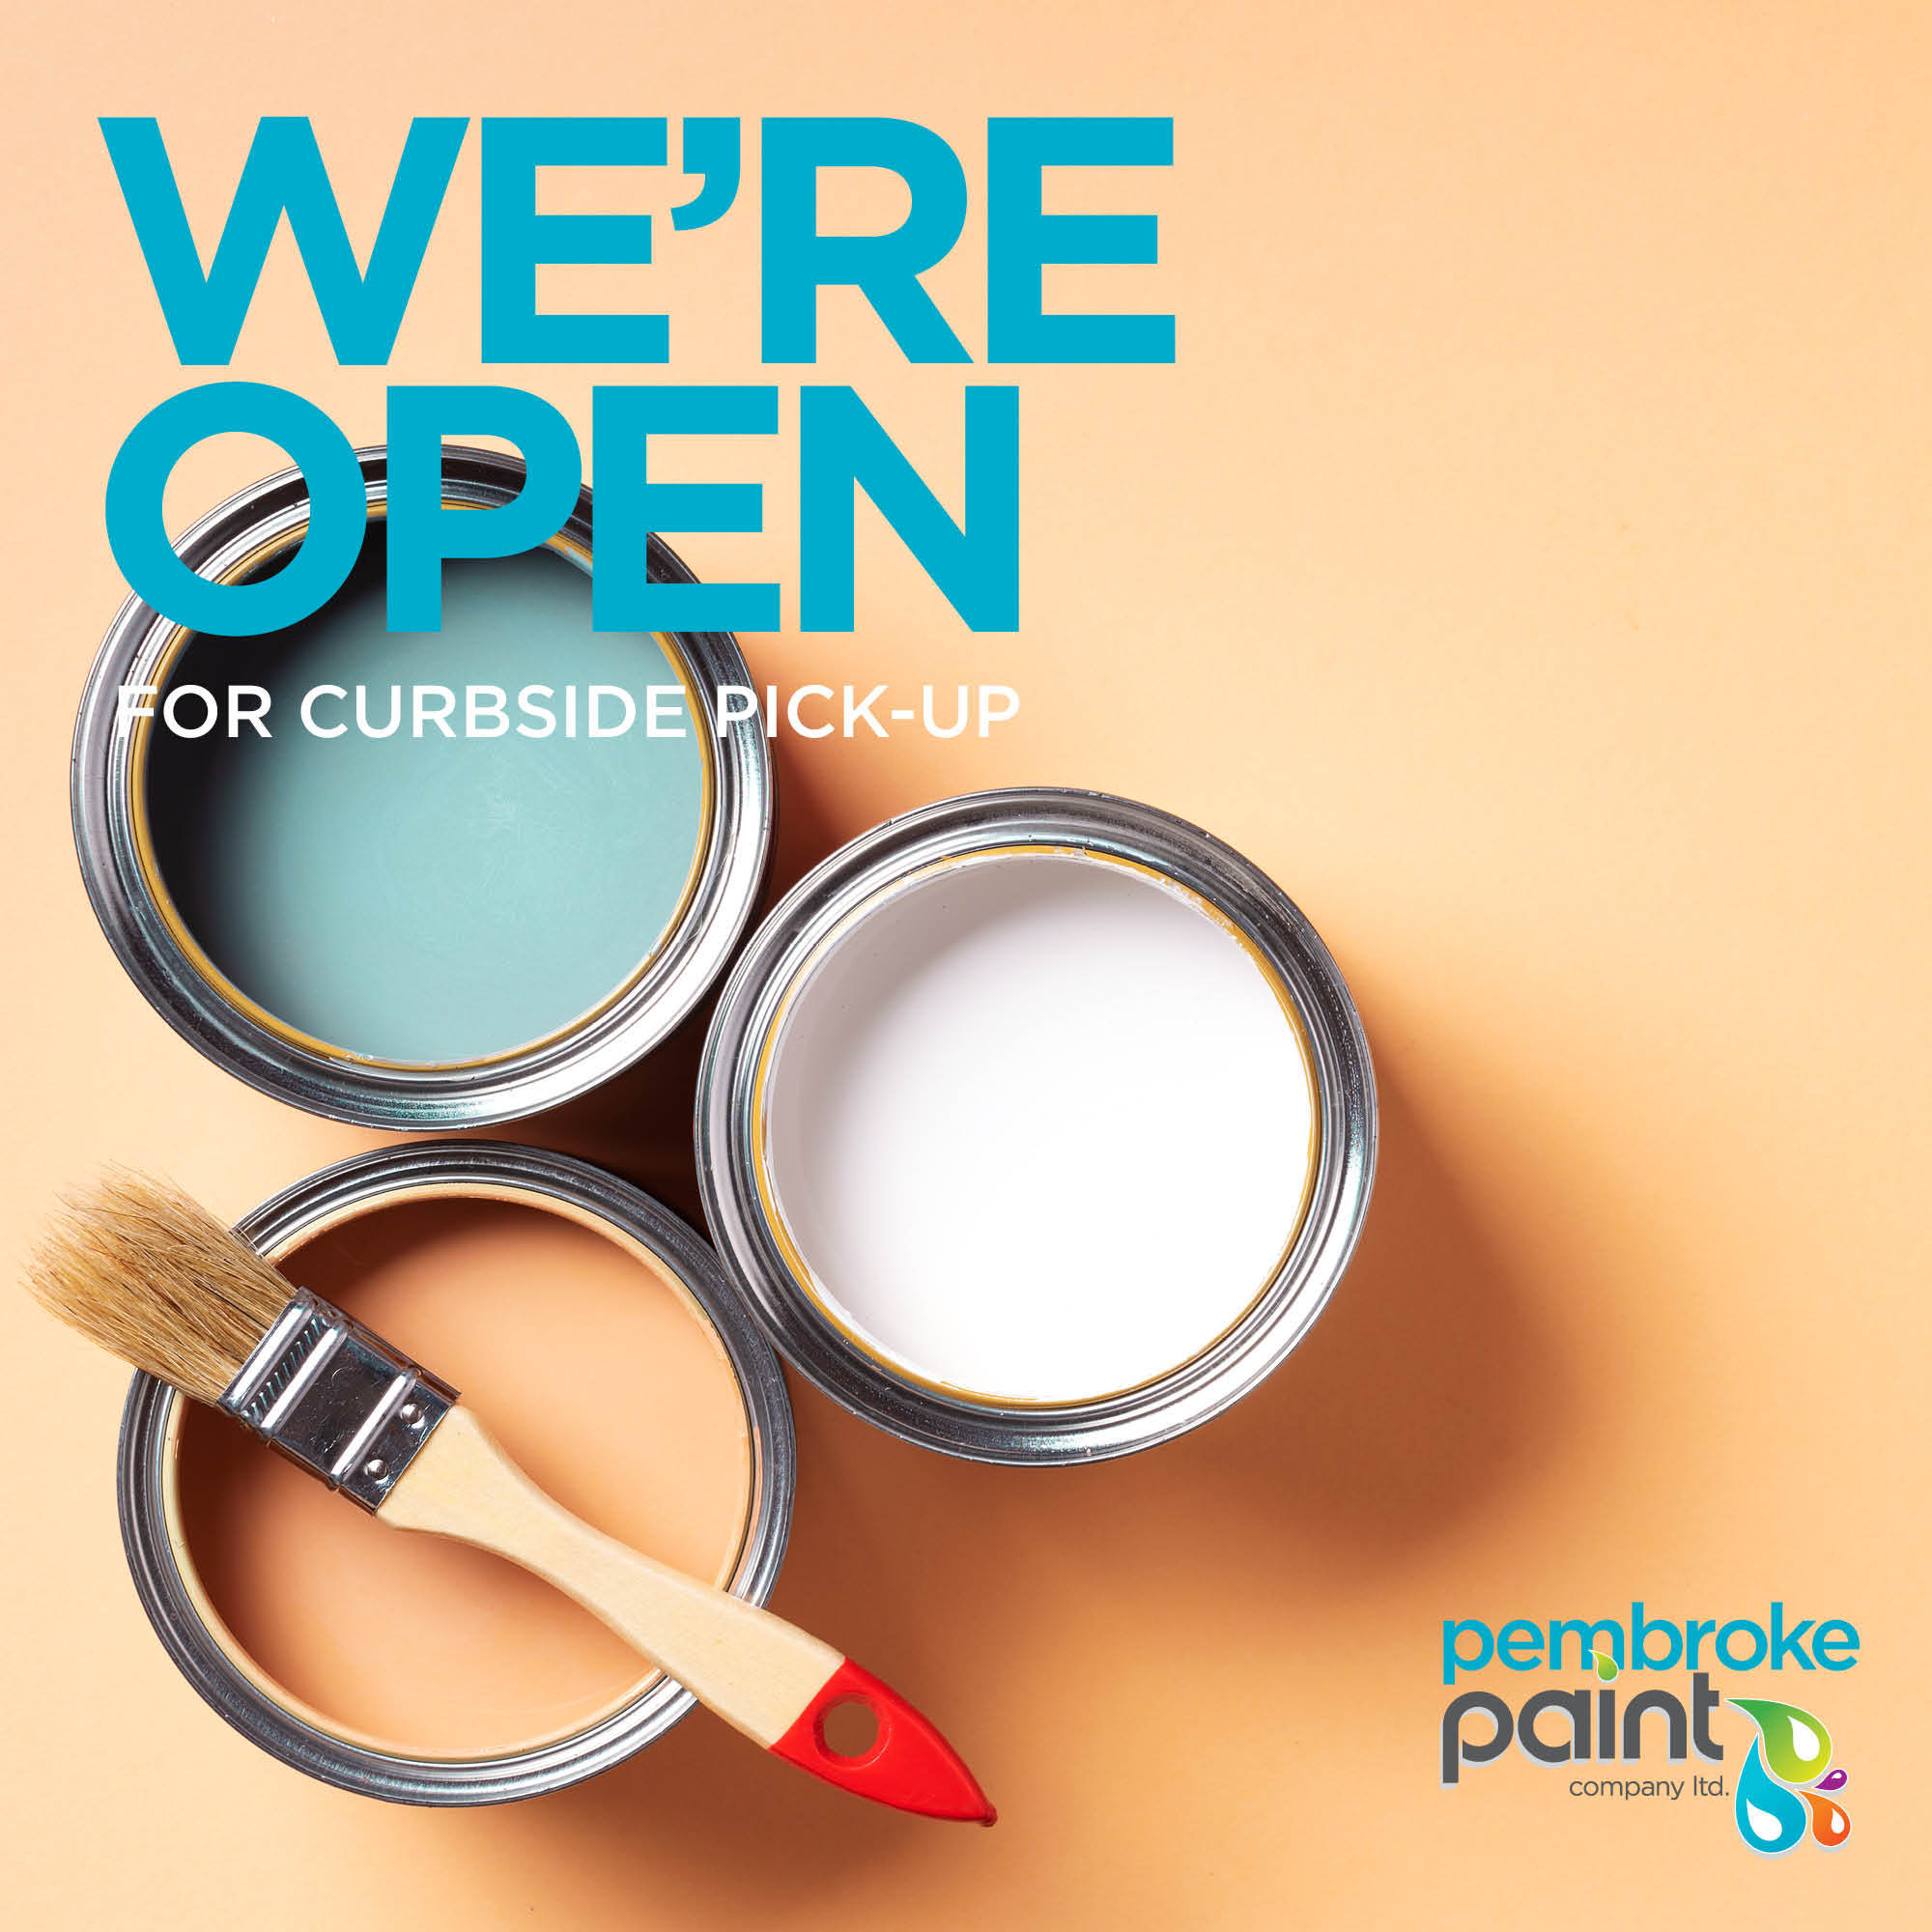 Pembroke Paint Co. Ltd.